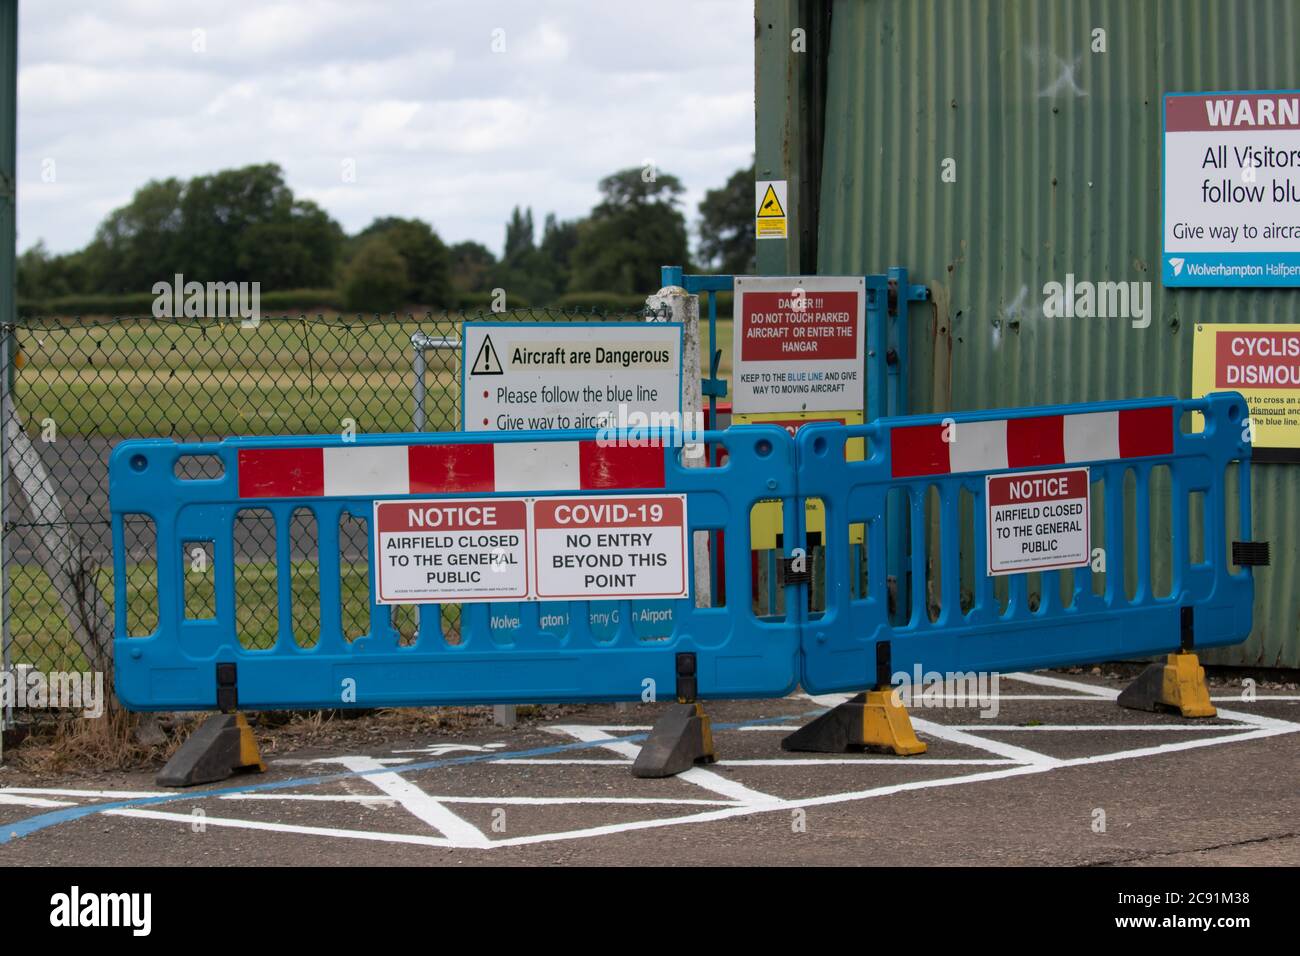 Panneaux fermés en raison de Covid-19. Aéroport de Wolverhampton Halfpenny Green. Staffordshire. ROYAUME-UNI Banque D'Images